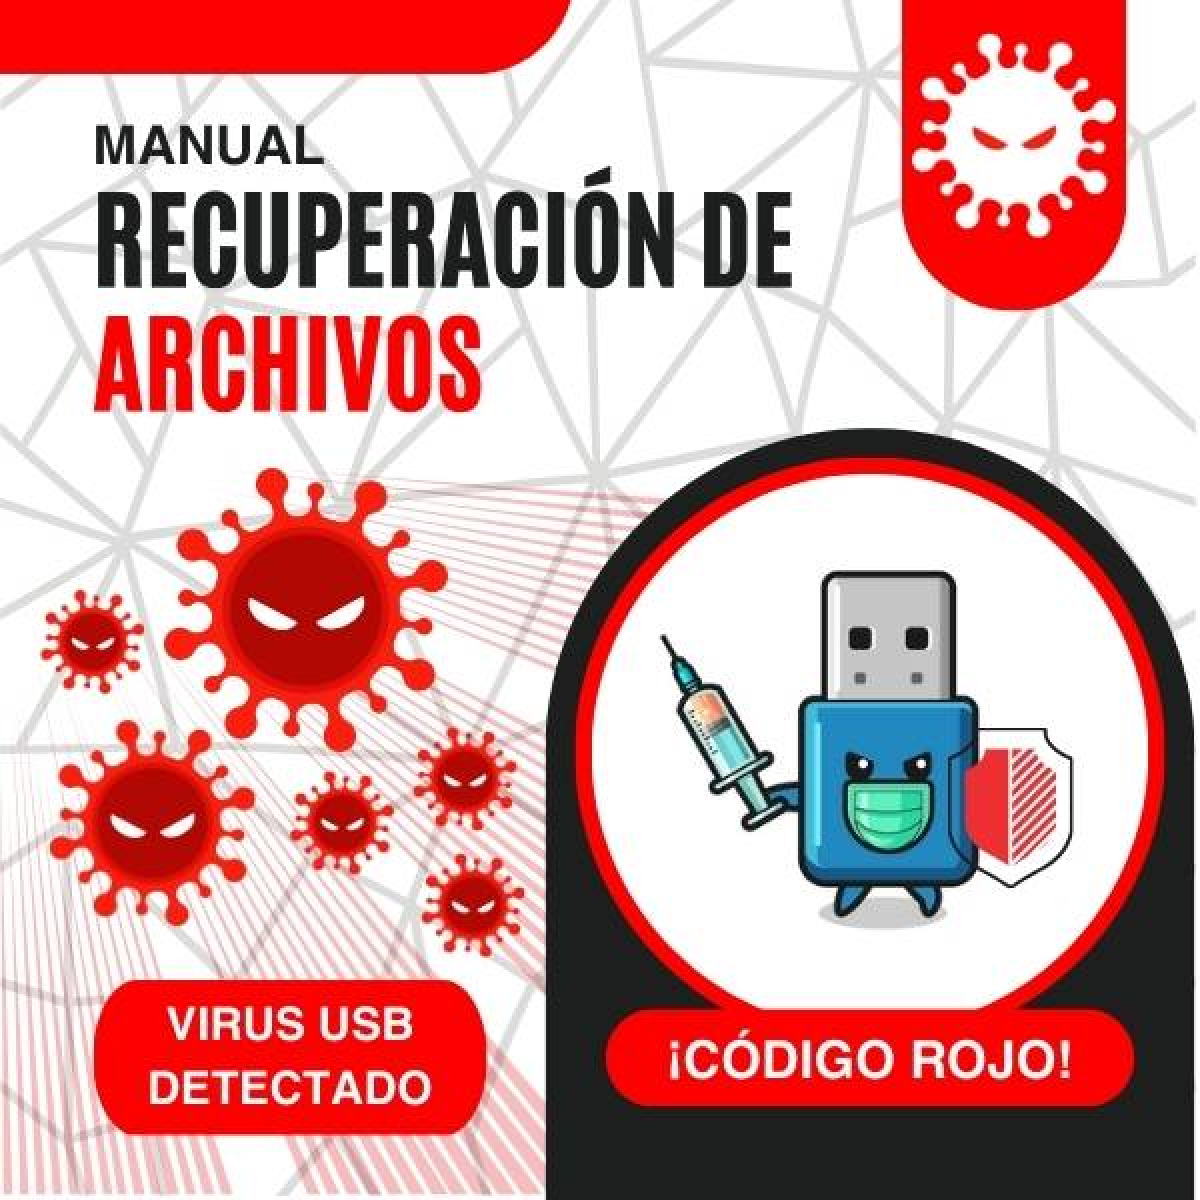 ¡Código rojo! Virus USB detectado: Manual de recuperación de archivos